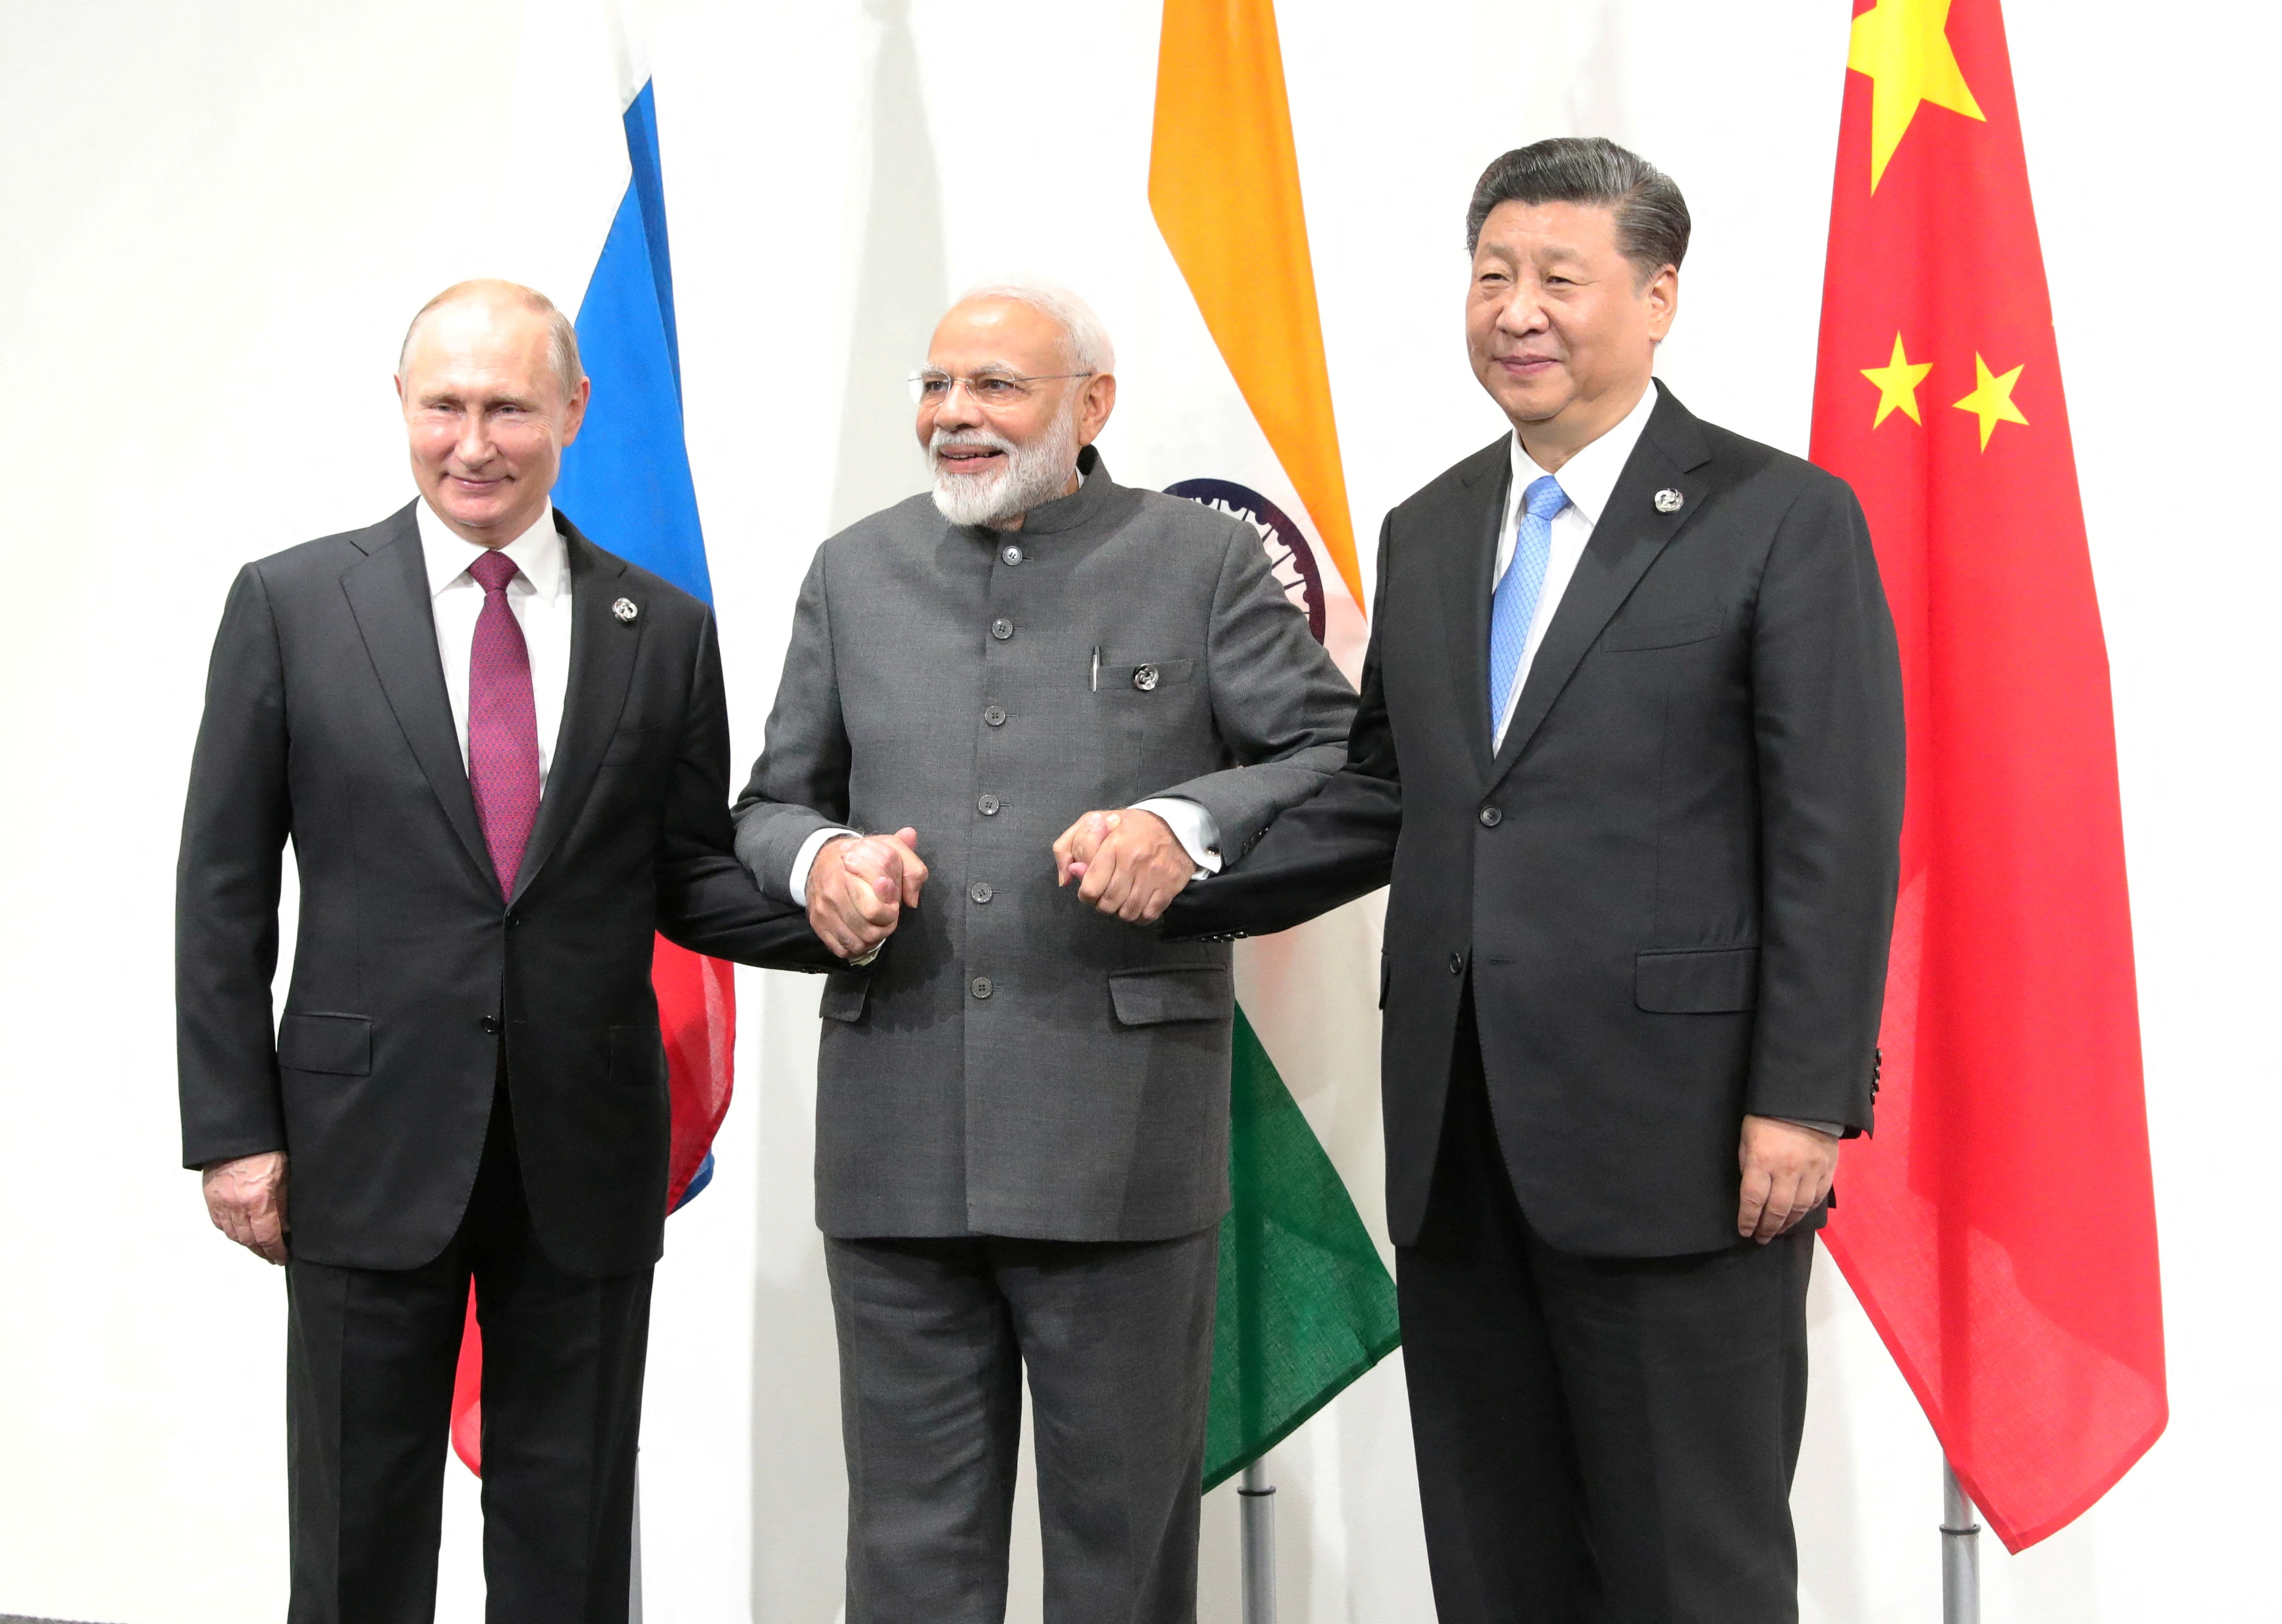 블라디미르 푸틴(왼쪽) 러시아 대통령, 나렌드라 모디(가운데) 인도 총리, 시진핑(오른쪽) 중국 국가주석이 2019년 6월 28일(현지시간) 일본 오사카에서 열린 주요 20개국(G20) 정상회의에서 별도 회담을 갖고 있다. 로이터 연합뉴스